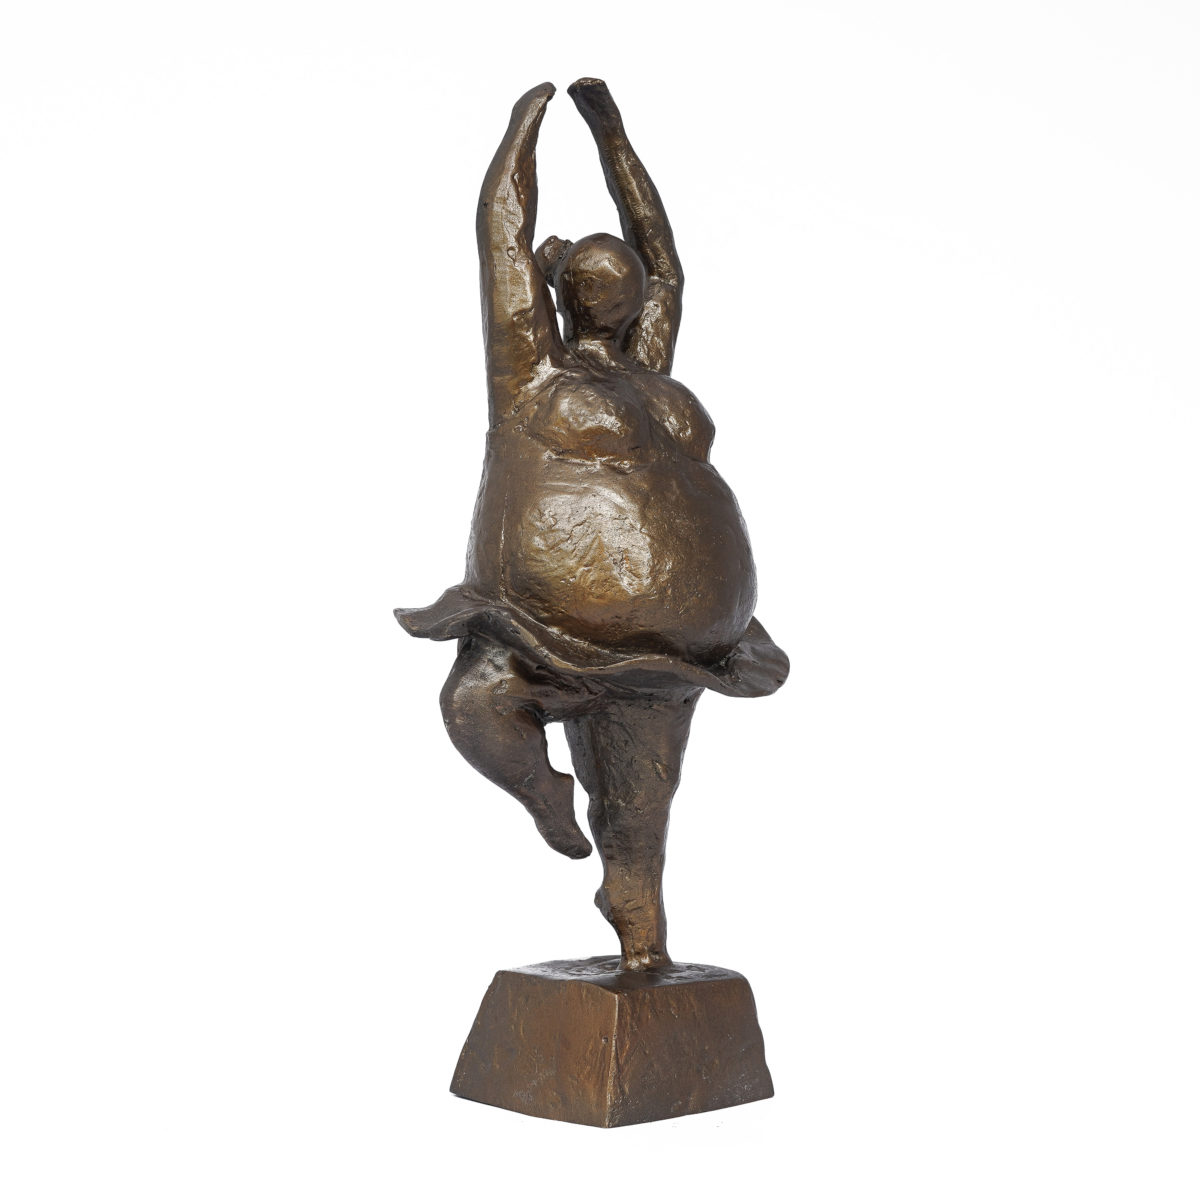 Big yoga dancing lady statue